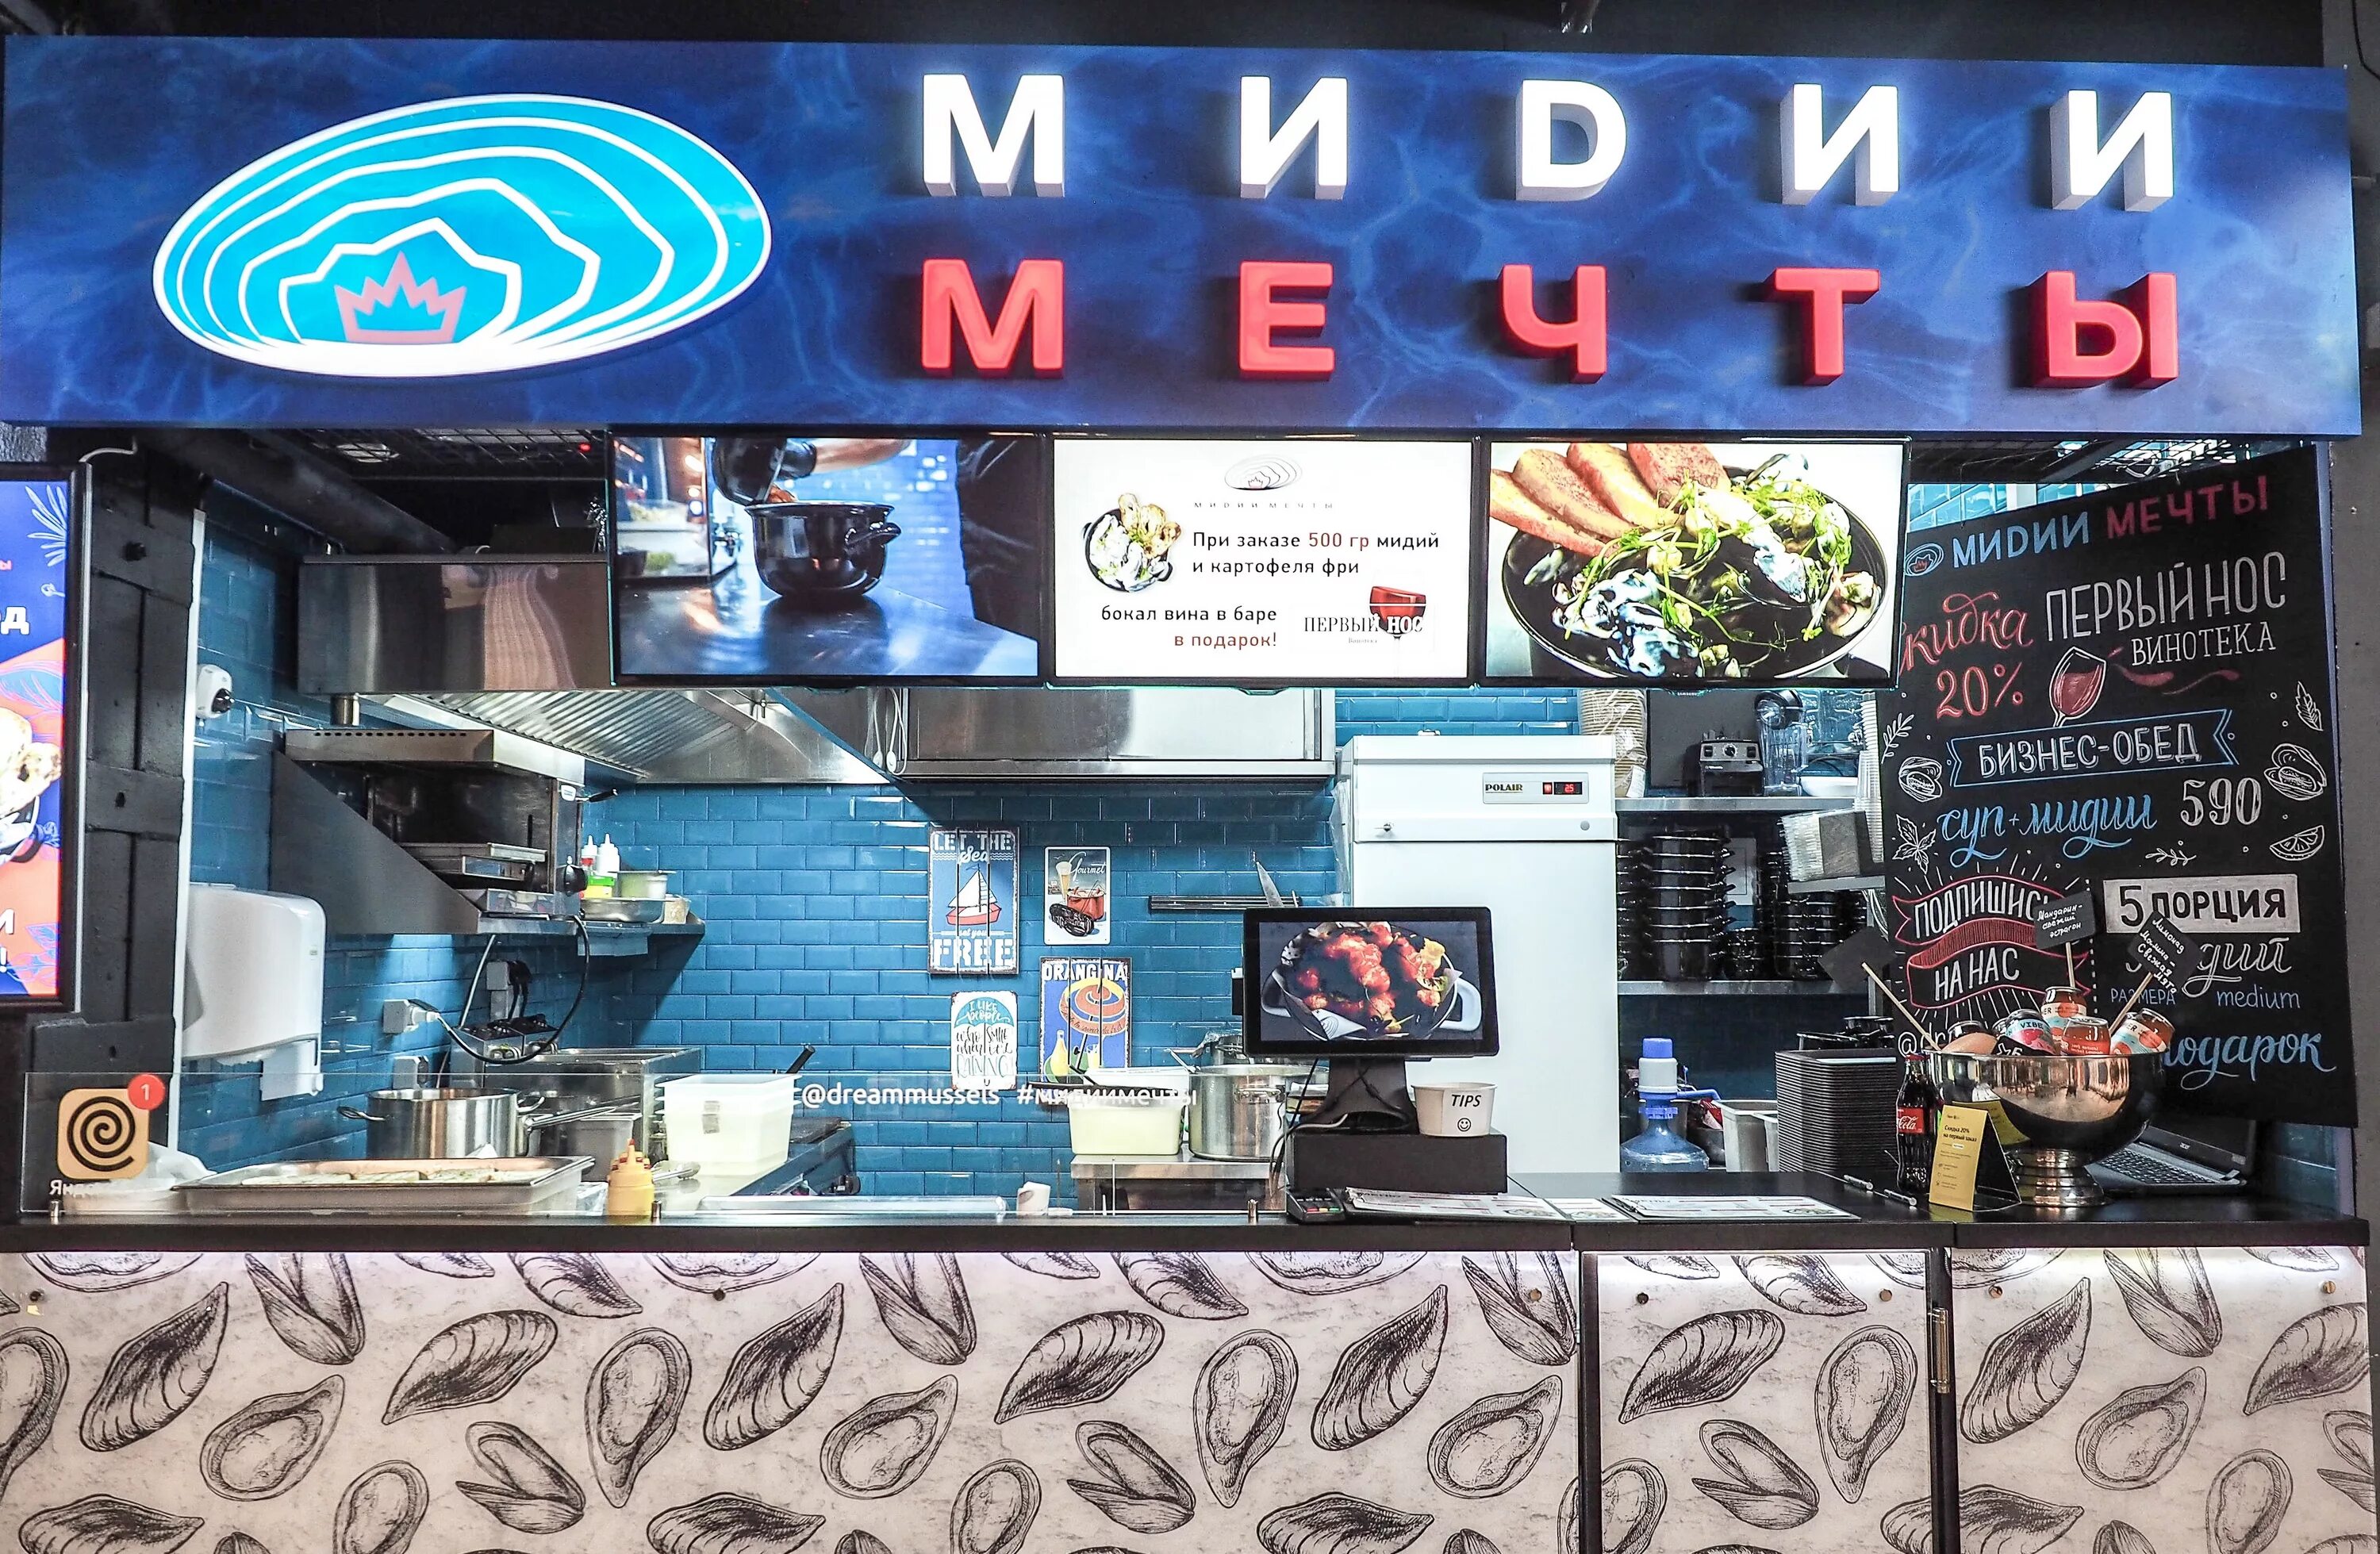 Мидийное место пушкинская ул 2 фото. Моллюска ресторан. Ресторан мидии мечты. Мидии в кафе. Мидии кафе в Москве.